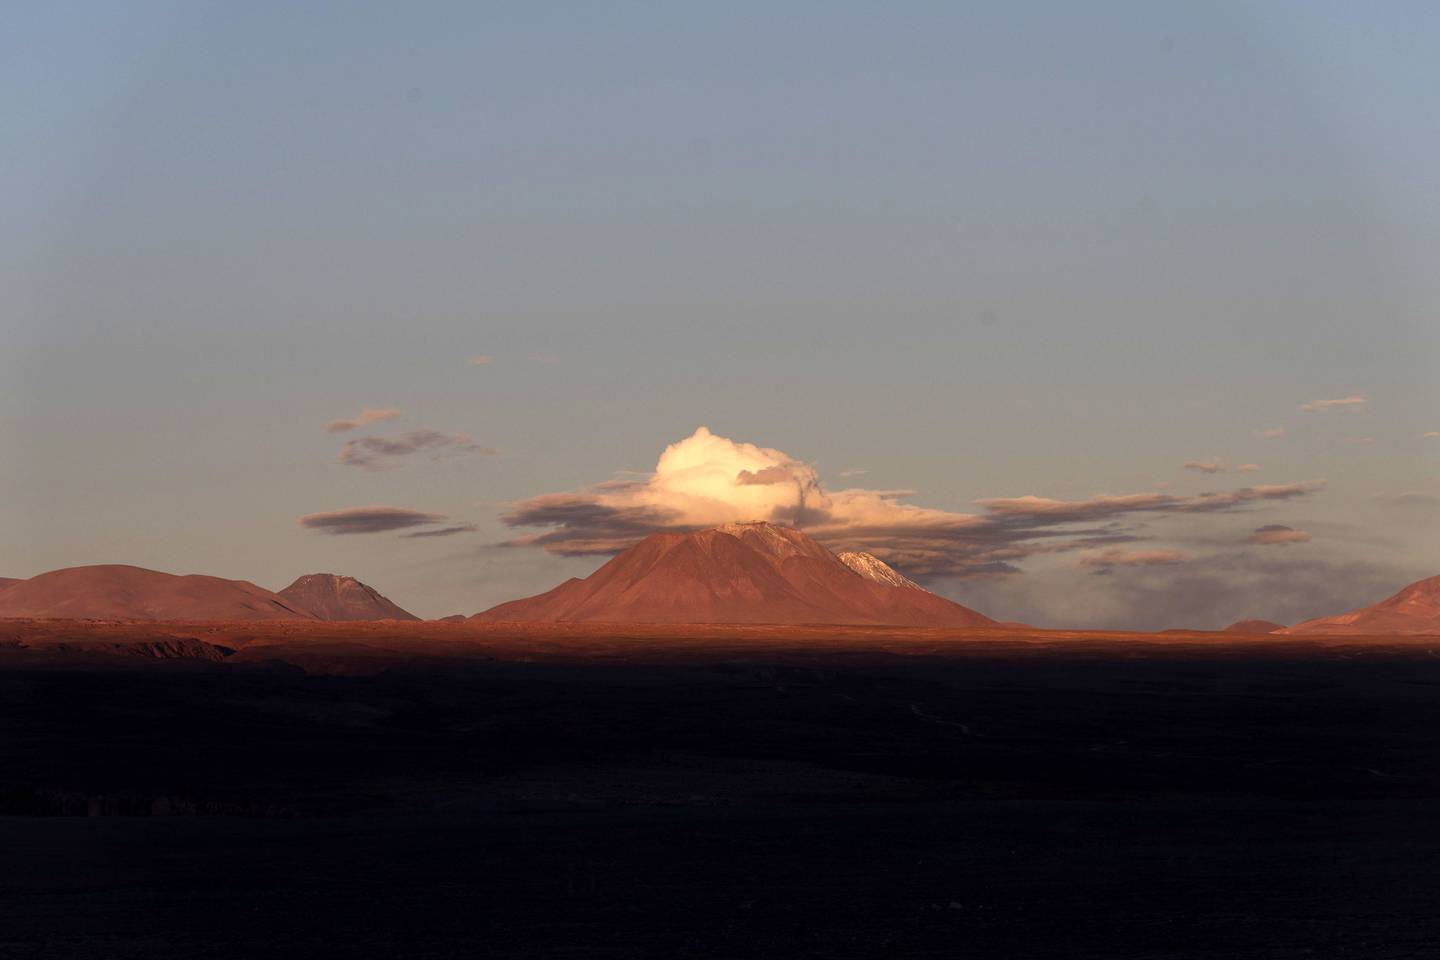 The Atacama desert at sunset in Chile. Photographer: Cristobal Olivares/Bloomberg